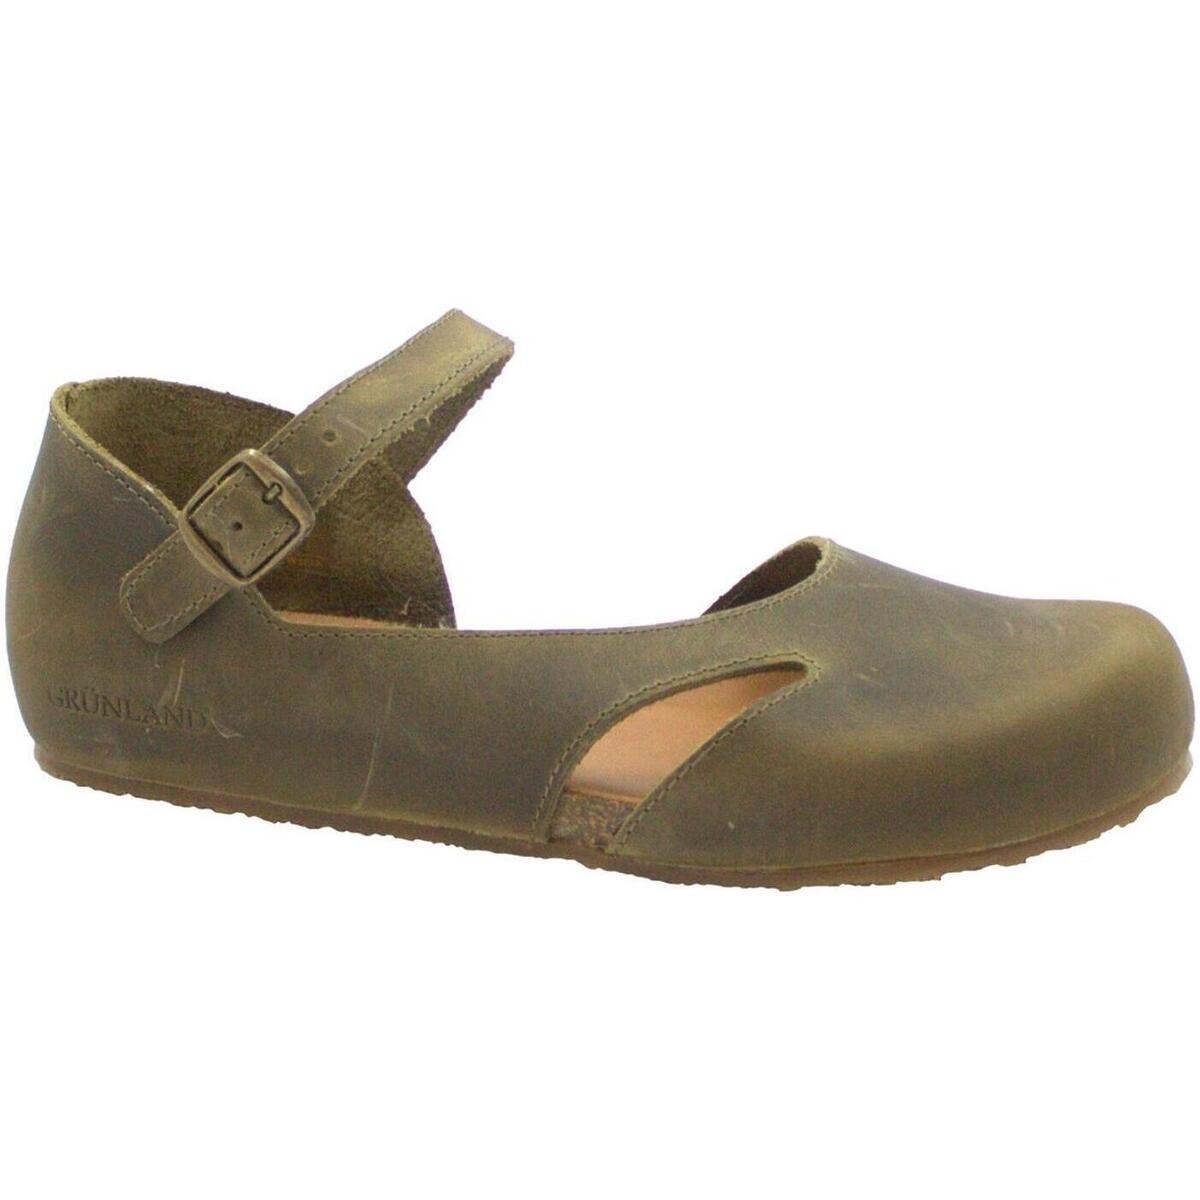 Spartoo - Women's Sandals - Green - Grunland GOOFASH